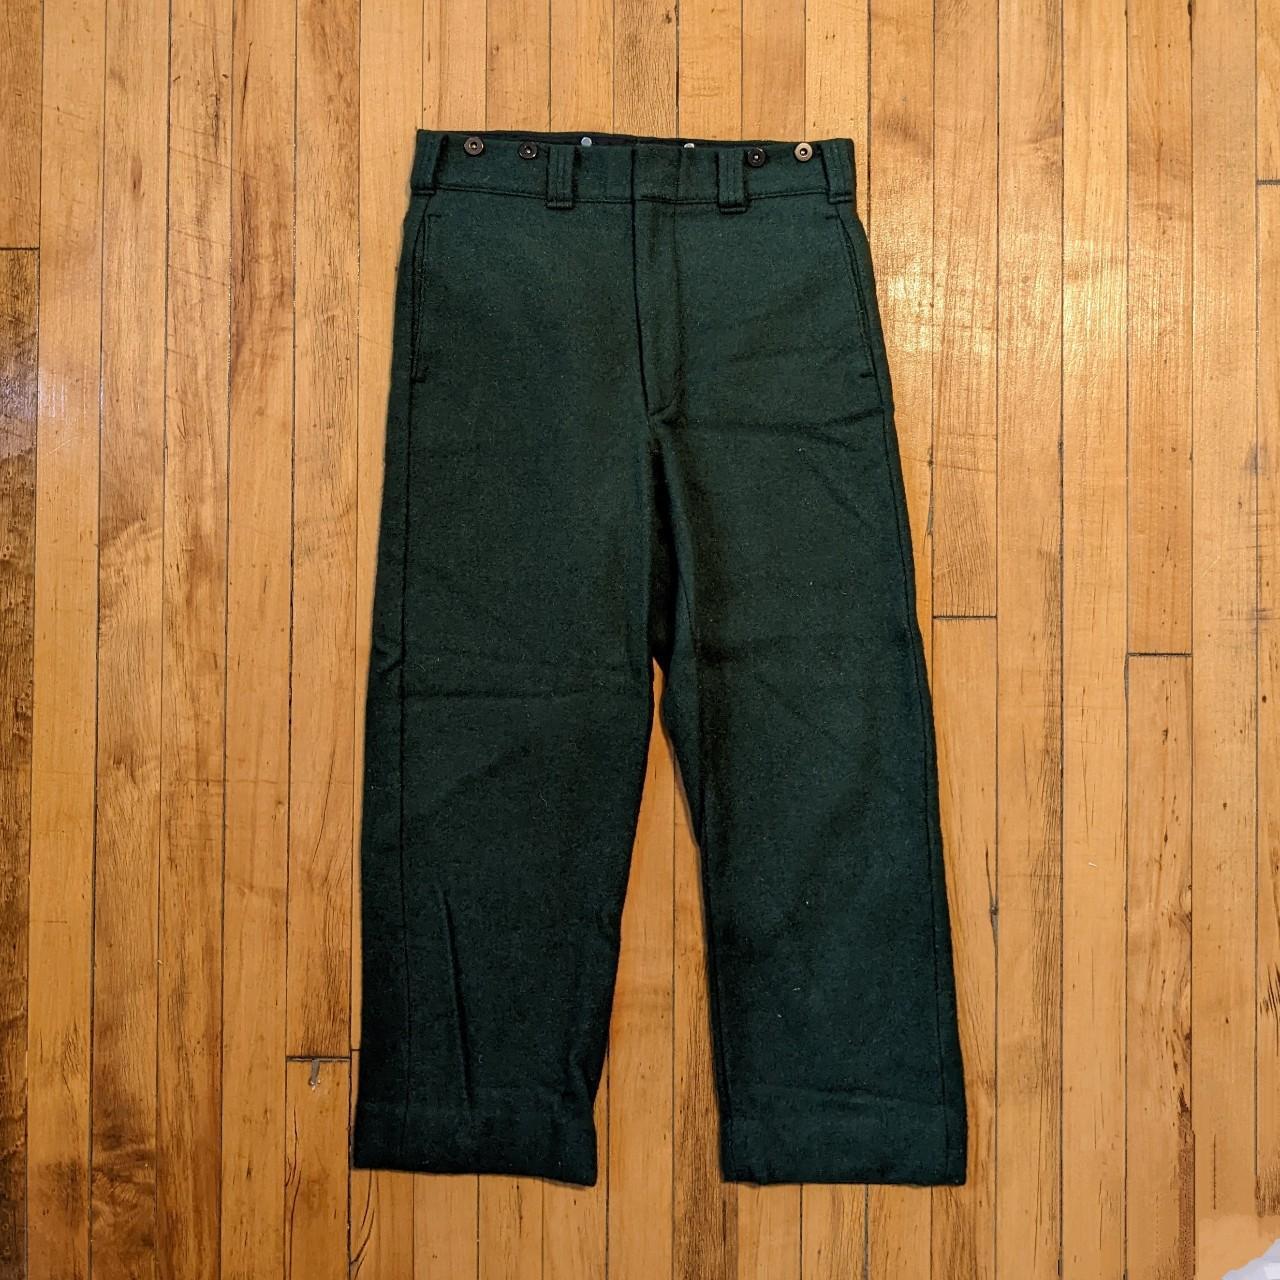 Buy Olive Green Trousers  Pants for Men by BLACKBERRYS Online  Ajiocom